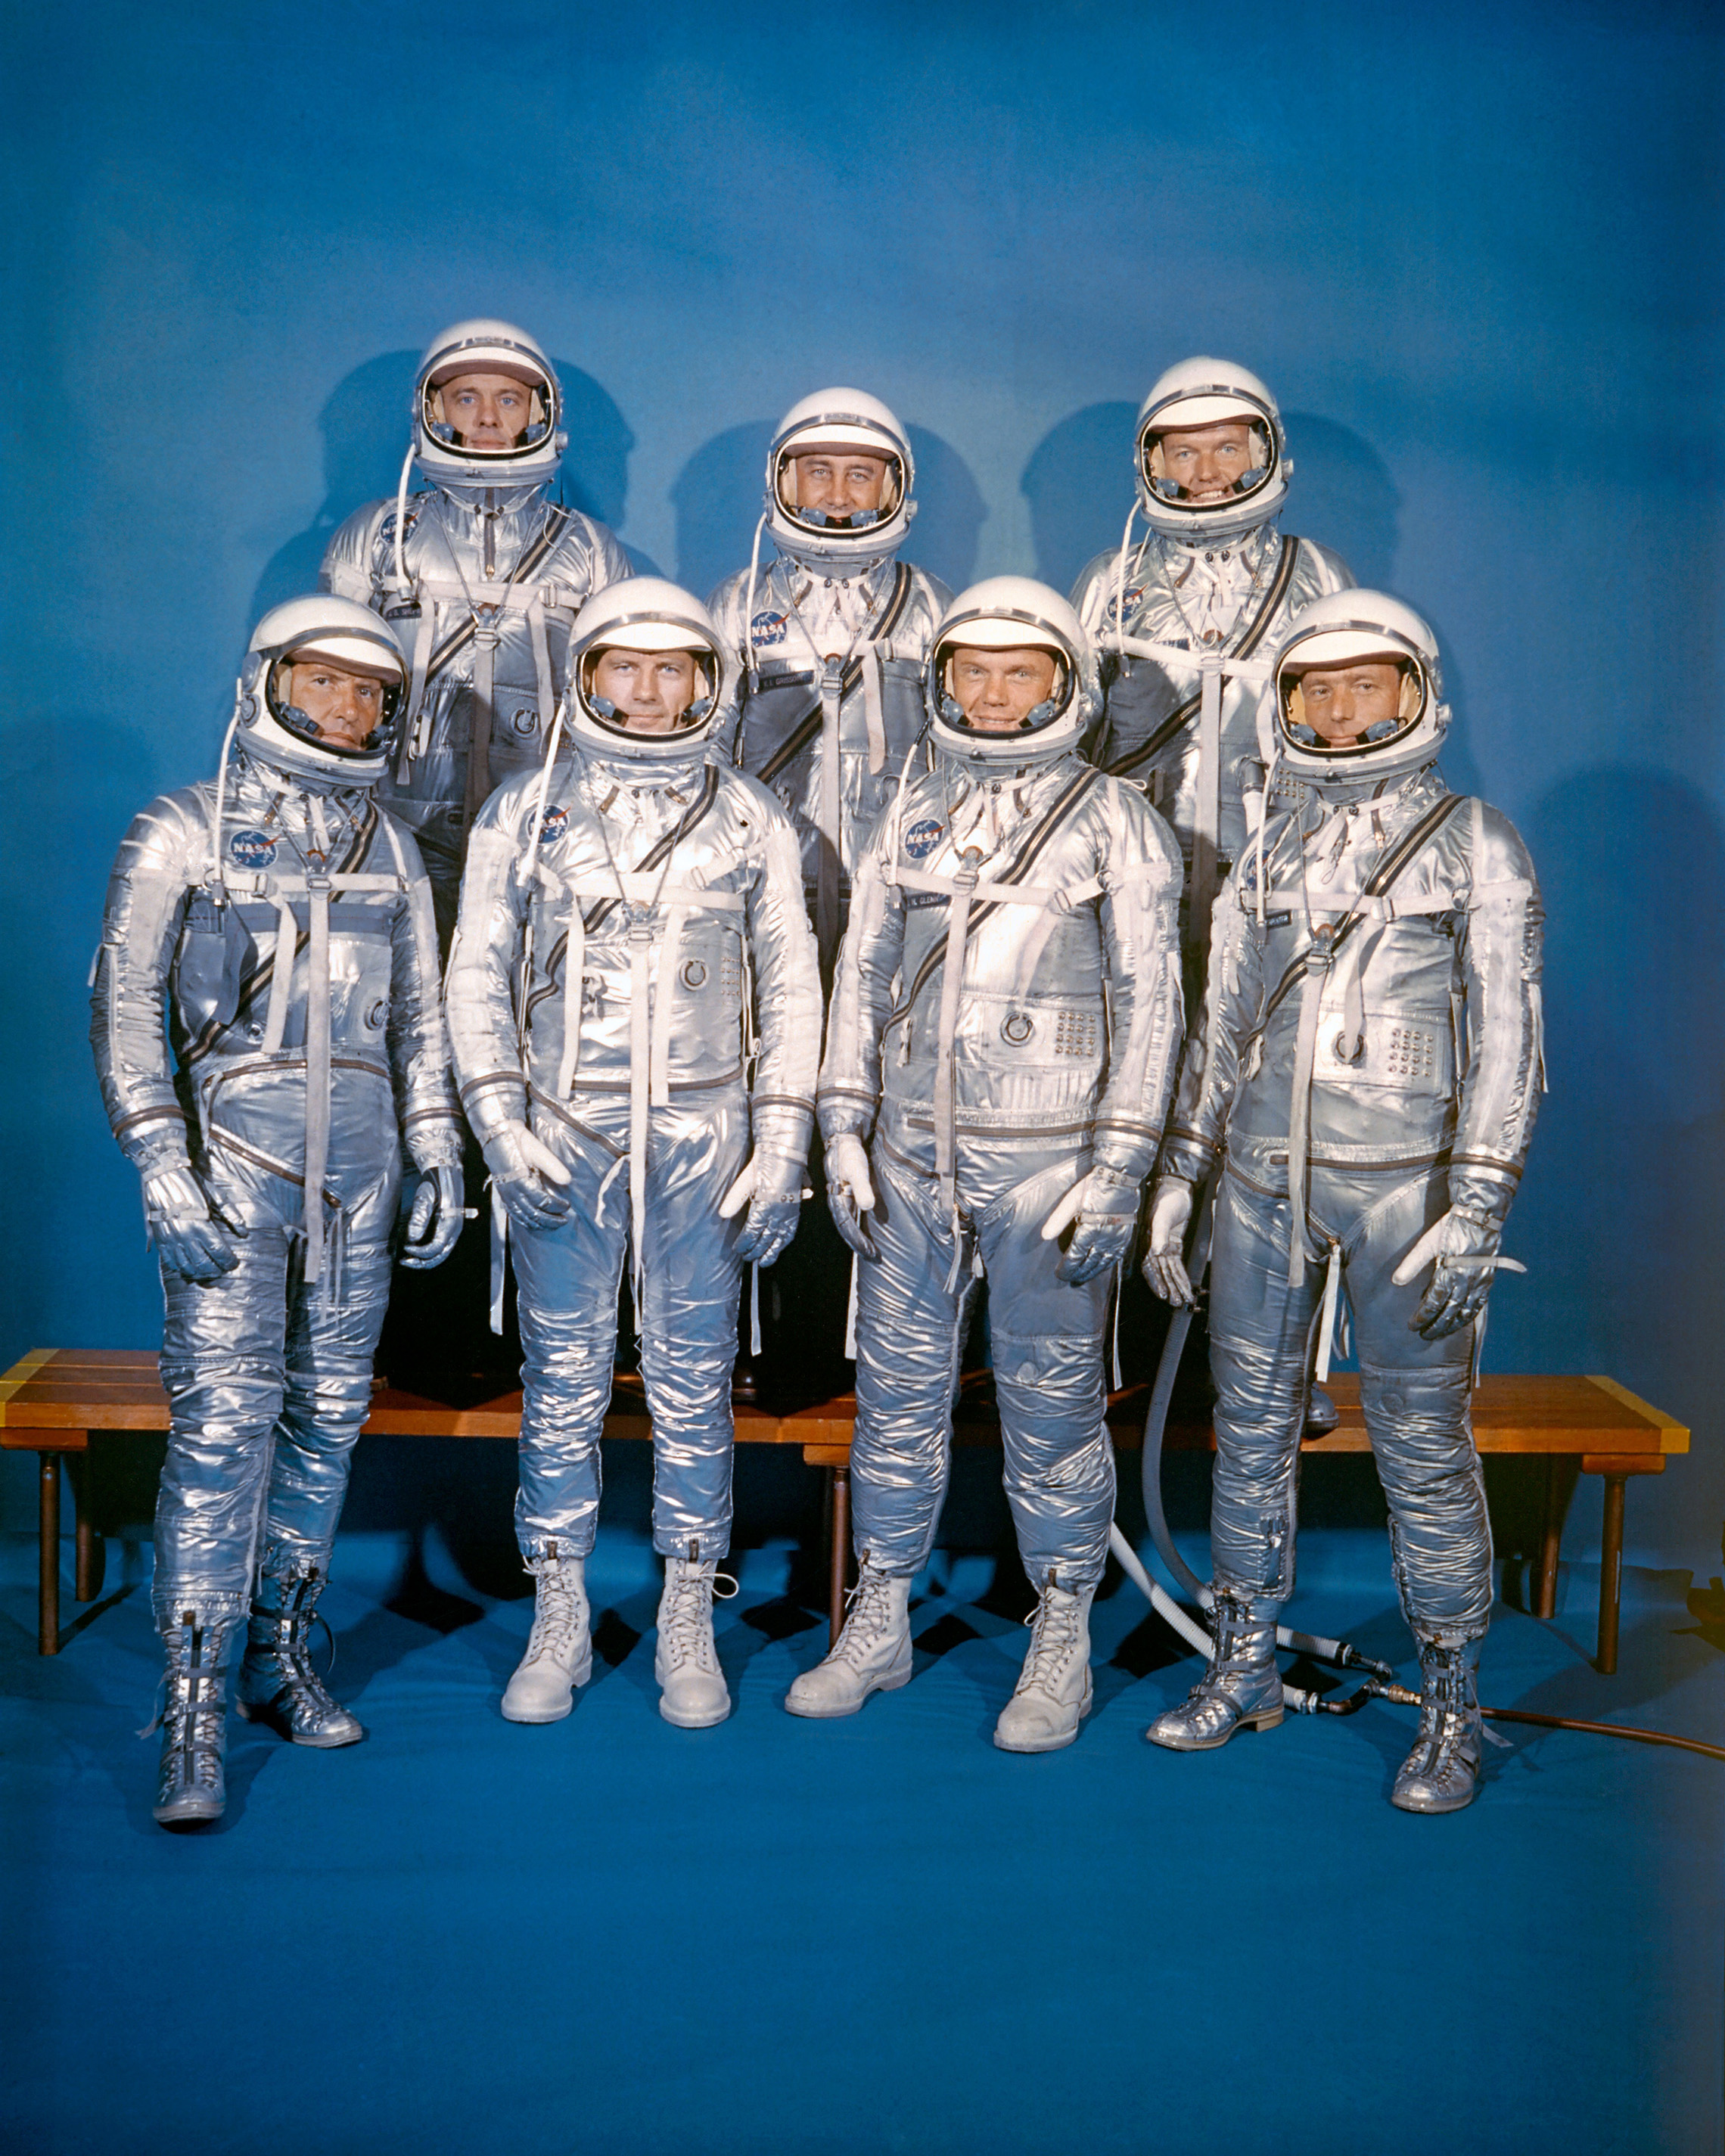 op 9 April 1959 introduceerde NASA zijn eerste astronaut klasse, De Mercury 7. Voorste rij, van links naar rechts: Walter M. Schirra, Jr., Donald K. "Deke" Slayton, John H. Glenn, Jr., en M. Scott Carpenter; achterste rij, Alan B. Shepard, Jr., Virgil I. "Gus" Grissom, en L. Gordon Cooper, Jr. (NASA): Walter M. Schirra, Jr., Donald K. "Deke" Slayton, John H. Glenn, Jr., en M. Scott Carpenter; Alan B. Shepard, Jr., Virgil I. "Gus" Grissom, en L. Gordon Cooper, Jr. (NASA)"Deke" Slayton, John H. Glenn, Jr., and M. Scott Carpenter; back row, Alan B. Shepard, Jr., Virgil I. "Gus" Grissom, and L. Gordon Cooper, Jr. (NASA)